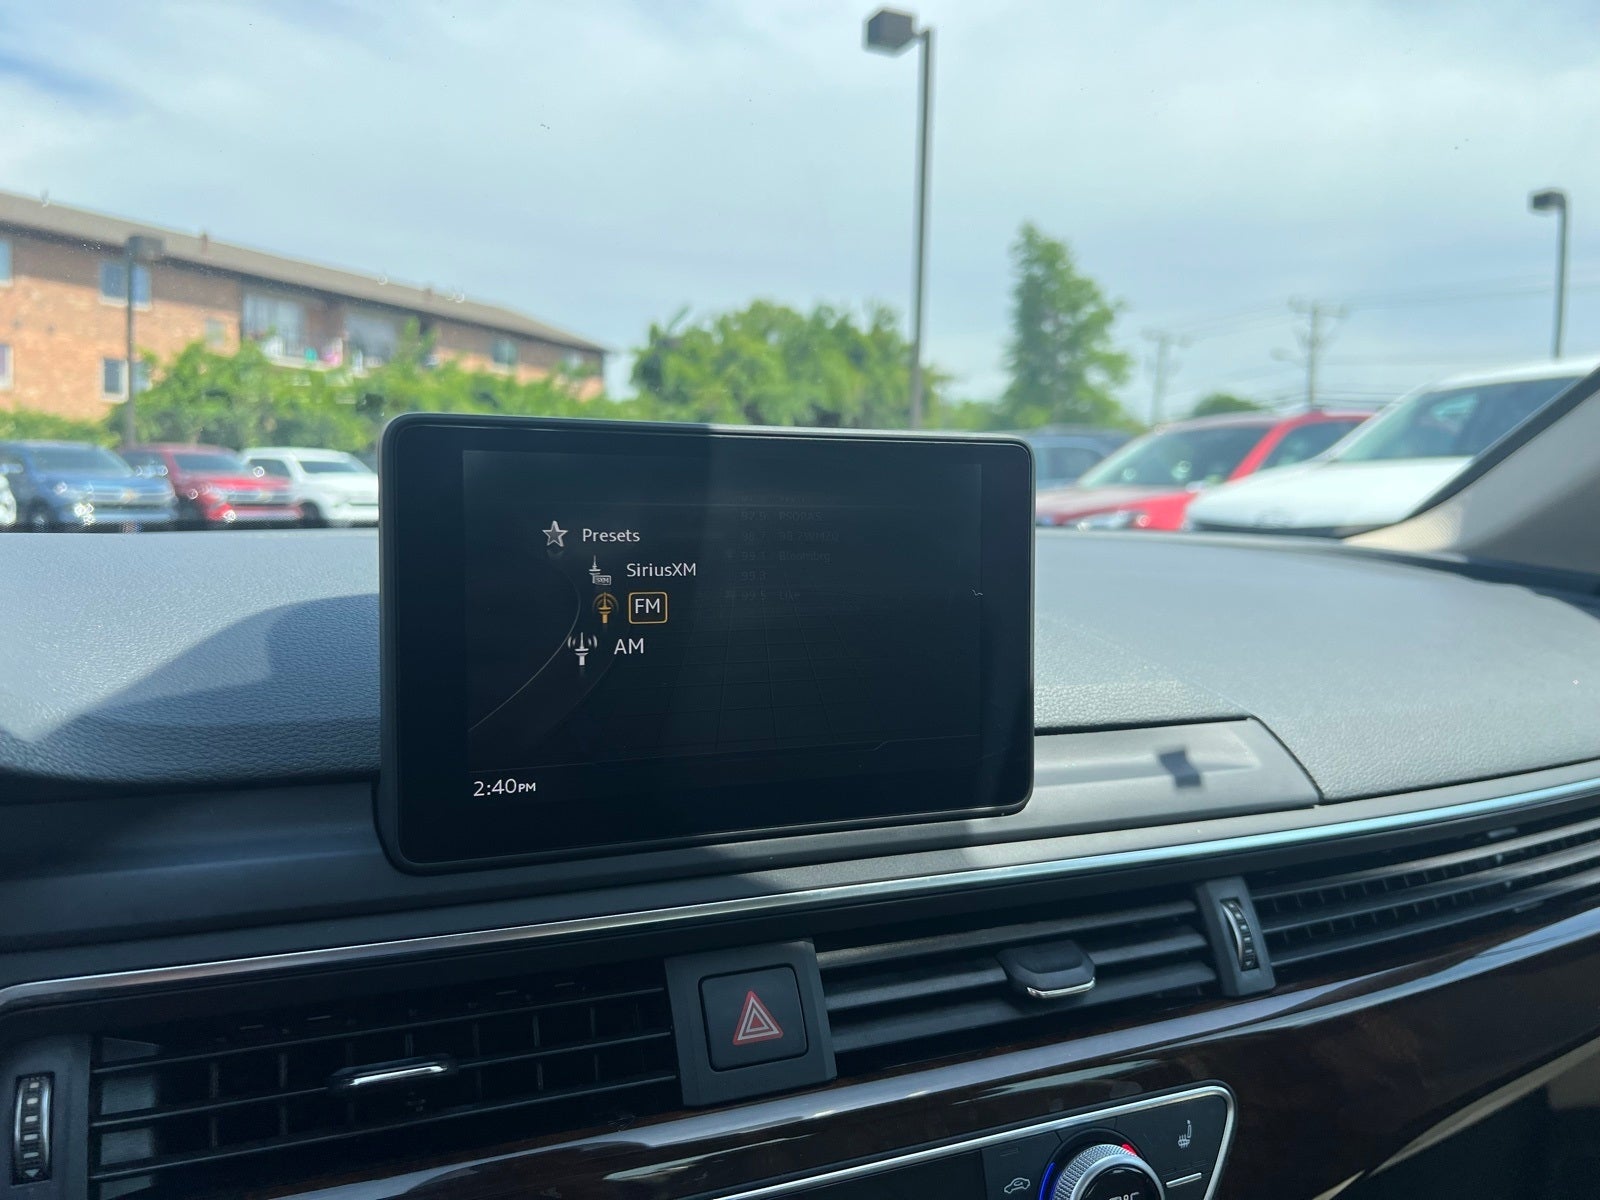 2018 Audi A4 2.0T ultra Premium